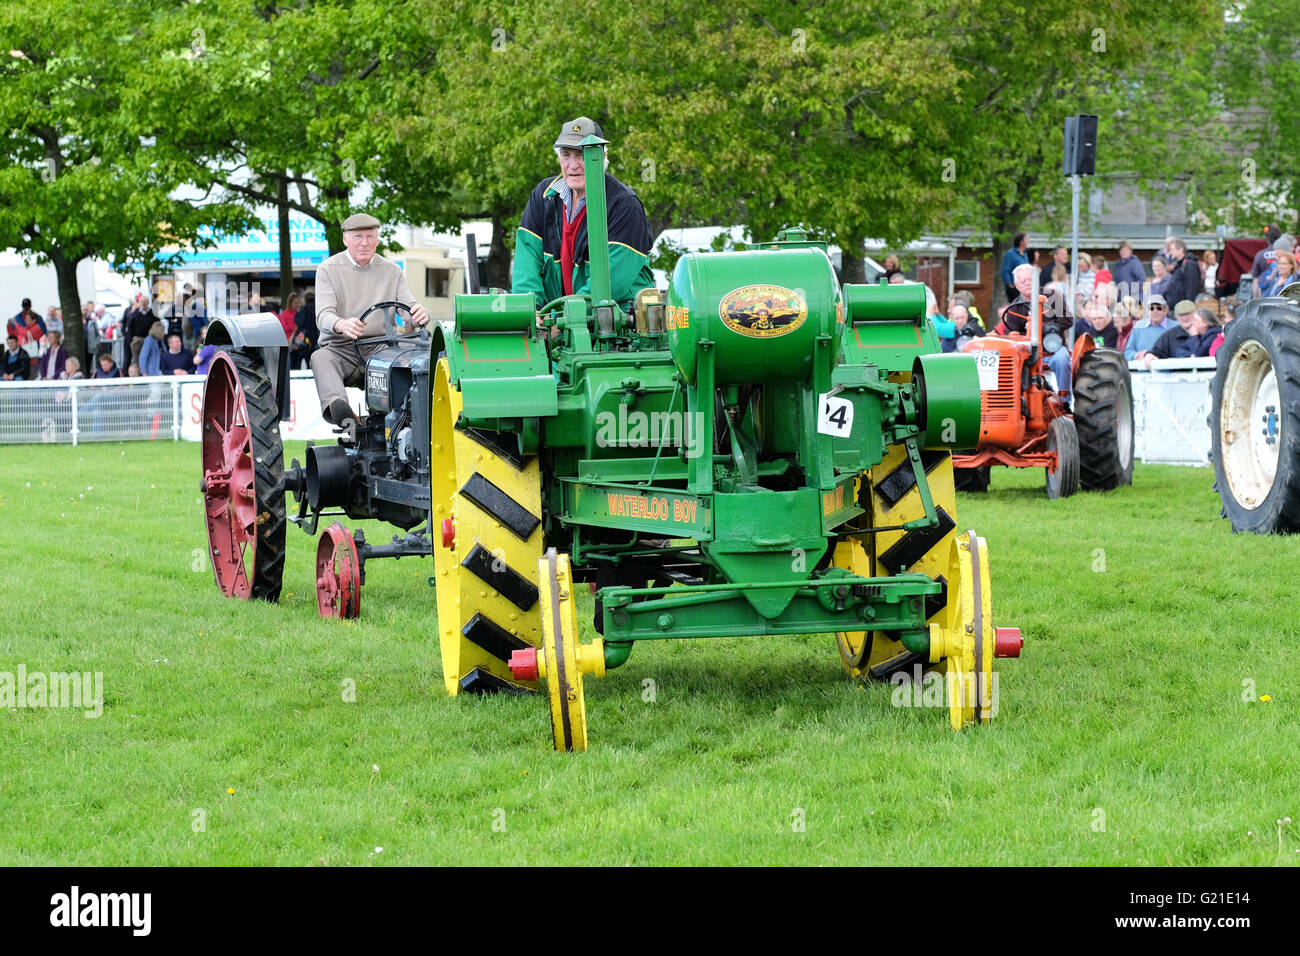 Royal Welsh Festival du printemps, mai 2016 - il exposition comportait un défilé de voitures anciennes et vintage - illustré ici est un "Waterloo Boy' construit par le moteur à essence Company de Waterloo, Iowa, États-Unis - ce modèle a été produit de 1913 à 1918. Banque D'Images